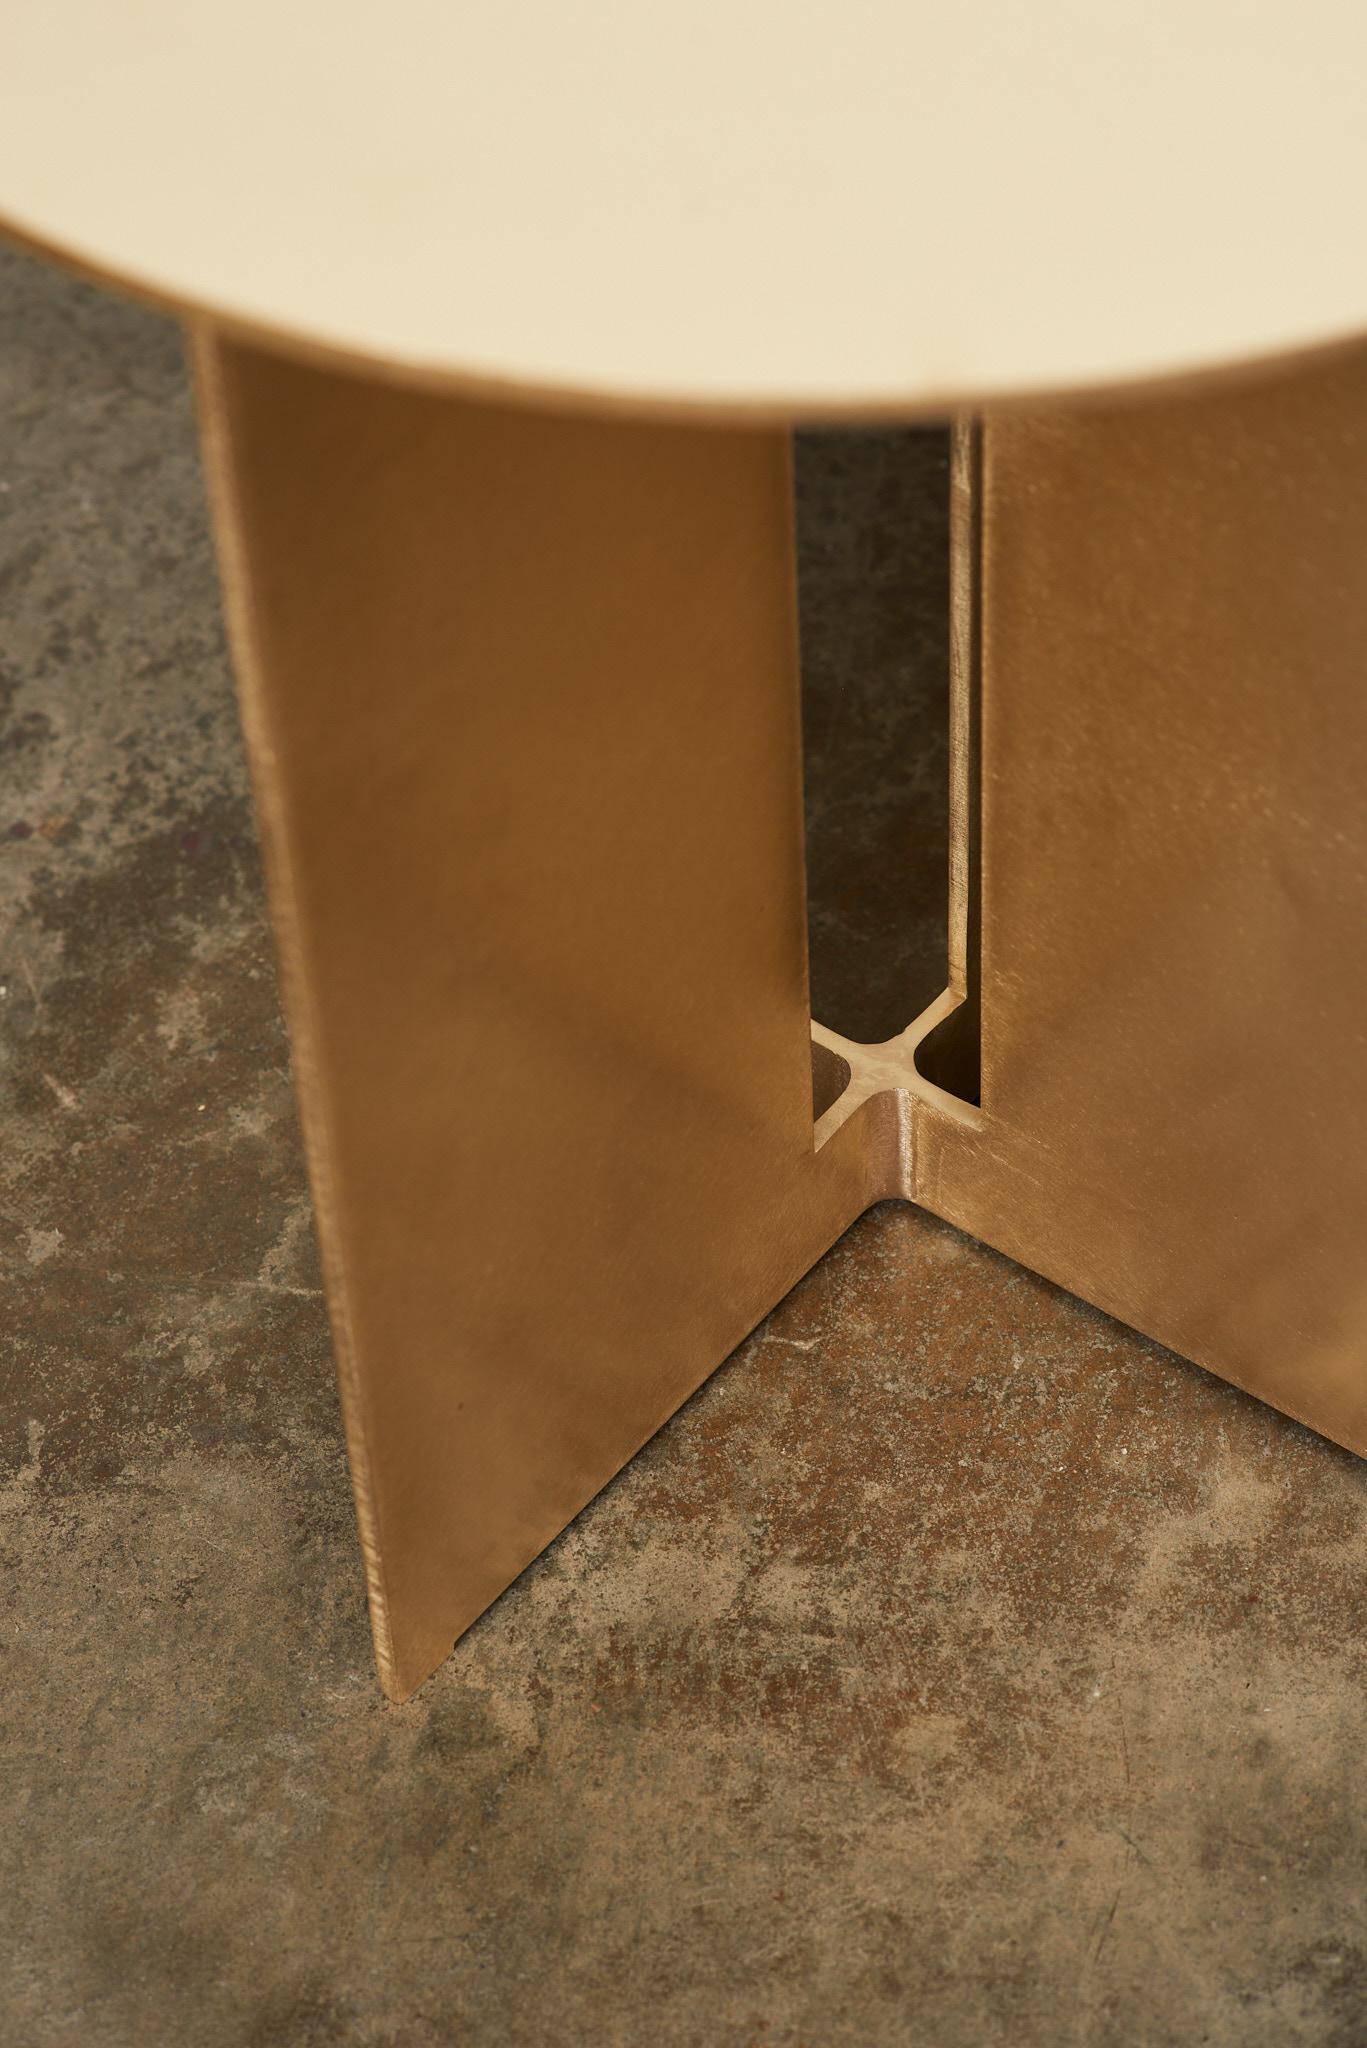 La table d'appoint Mers est fabriquée en bronze massif et peut être utilisée à l'intérieur comme à l'extérieur. La forme s'inspire de l'utilitarisme simple des bateaux de pêche en aluminium de la côte ouest.

Montré en finition bronze